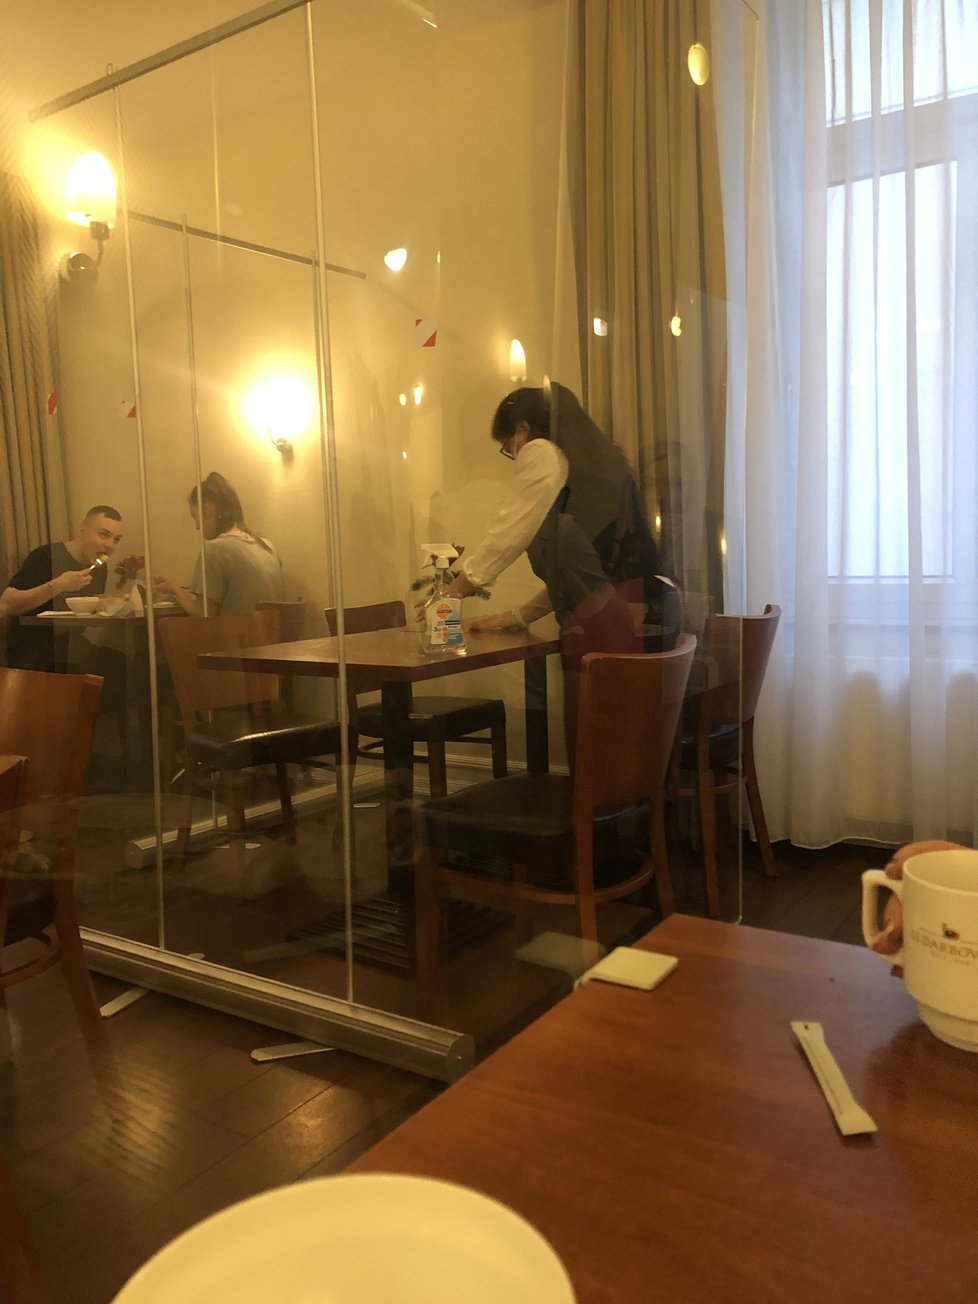 Stoly v hotelové restauraci oddělené plexiskly